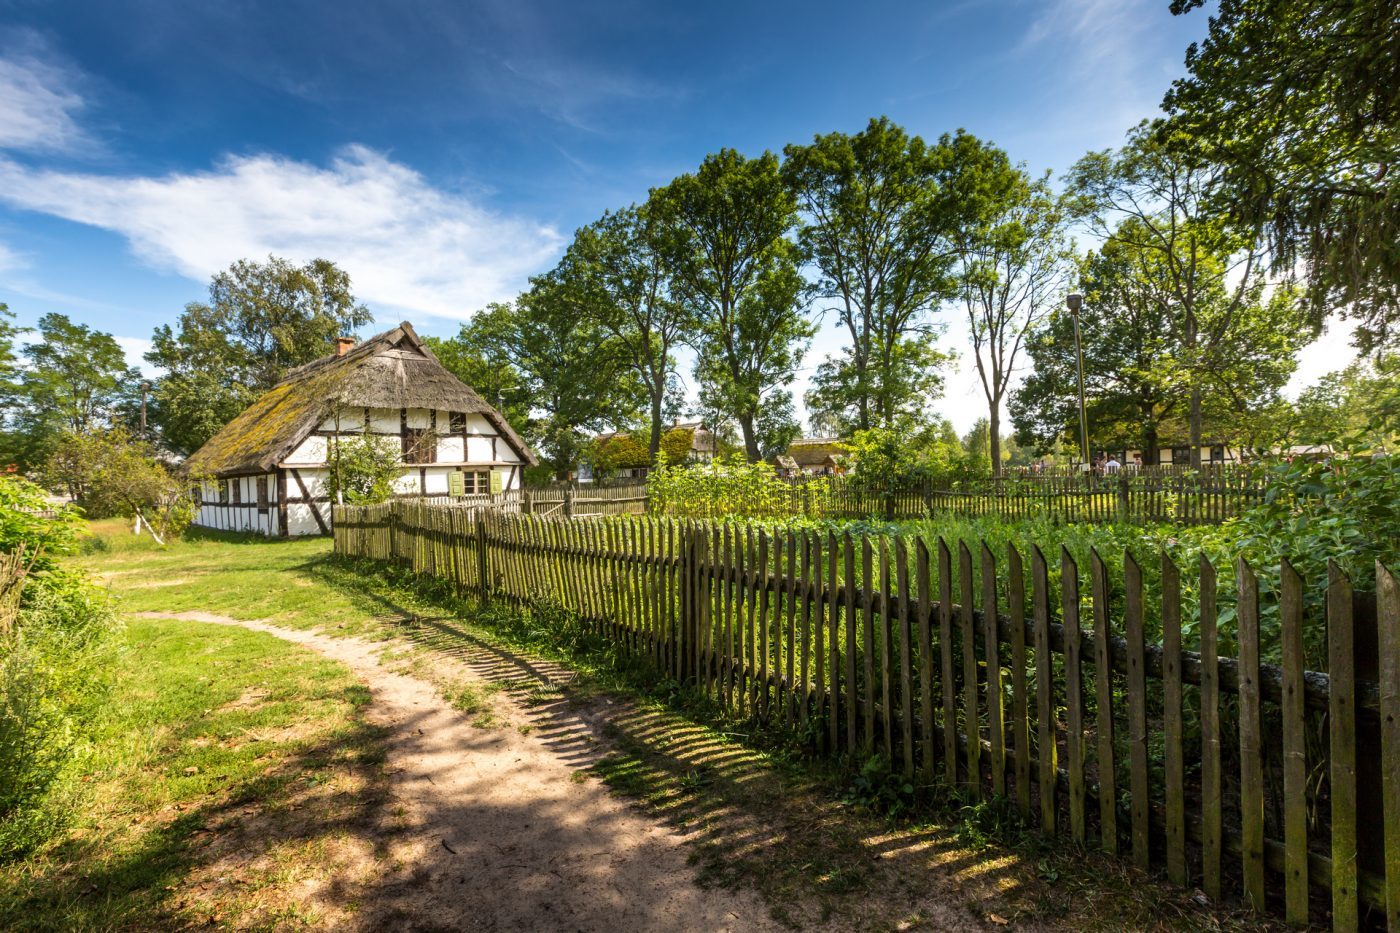 Tanie miejsca na wakacje w Polsce muzeum wsi słowińskiej w klukach